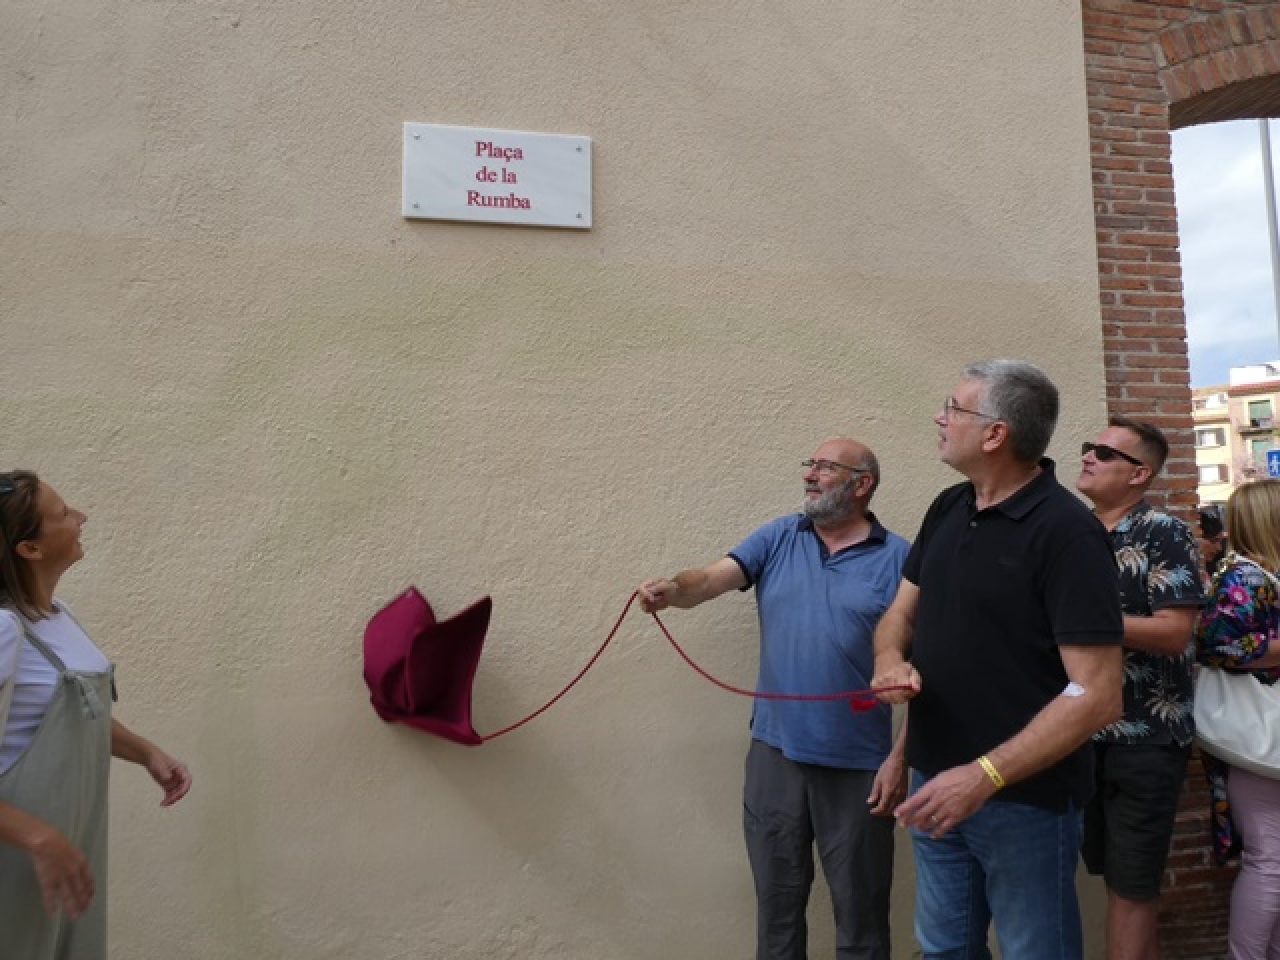 Descoberta de la placa de la nova plaça de la Rumba, a Tarragona